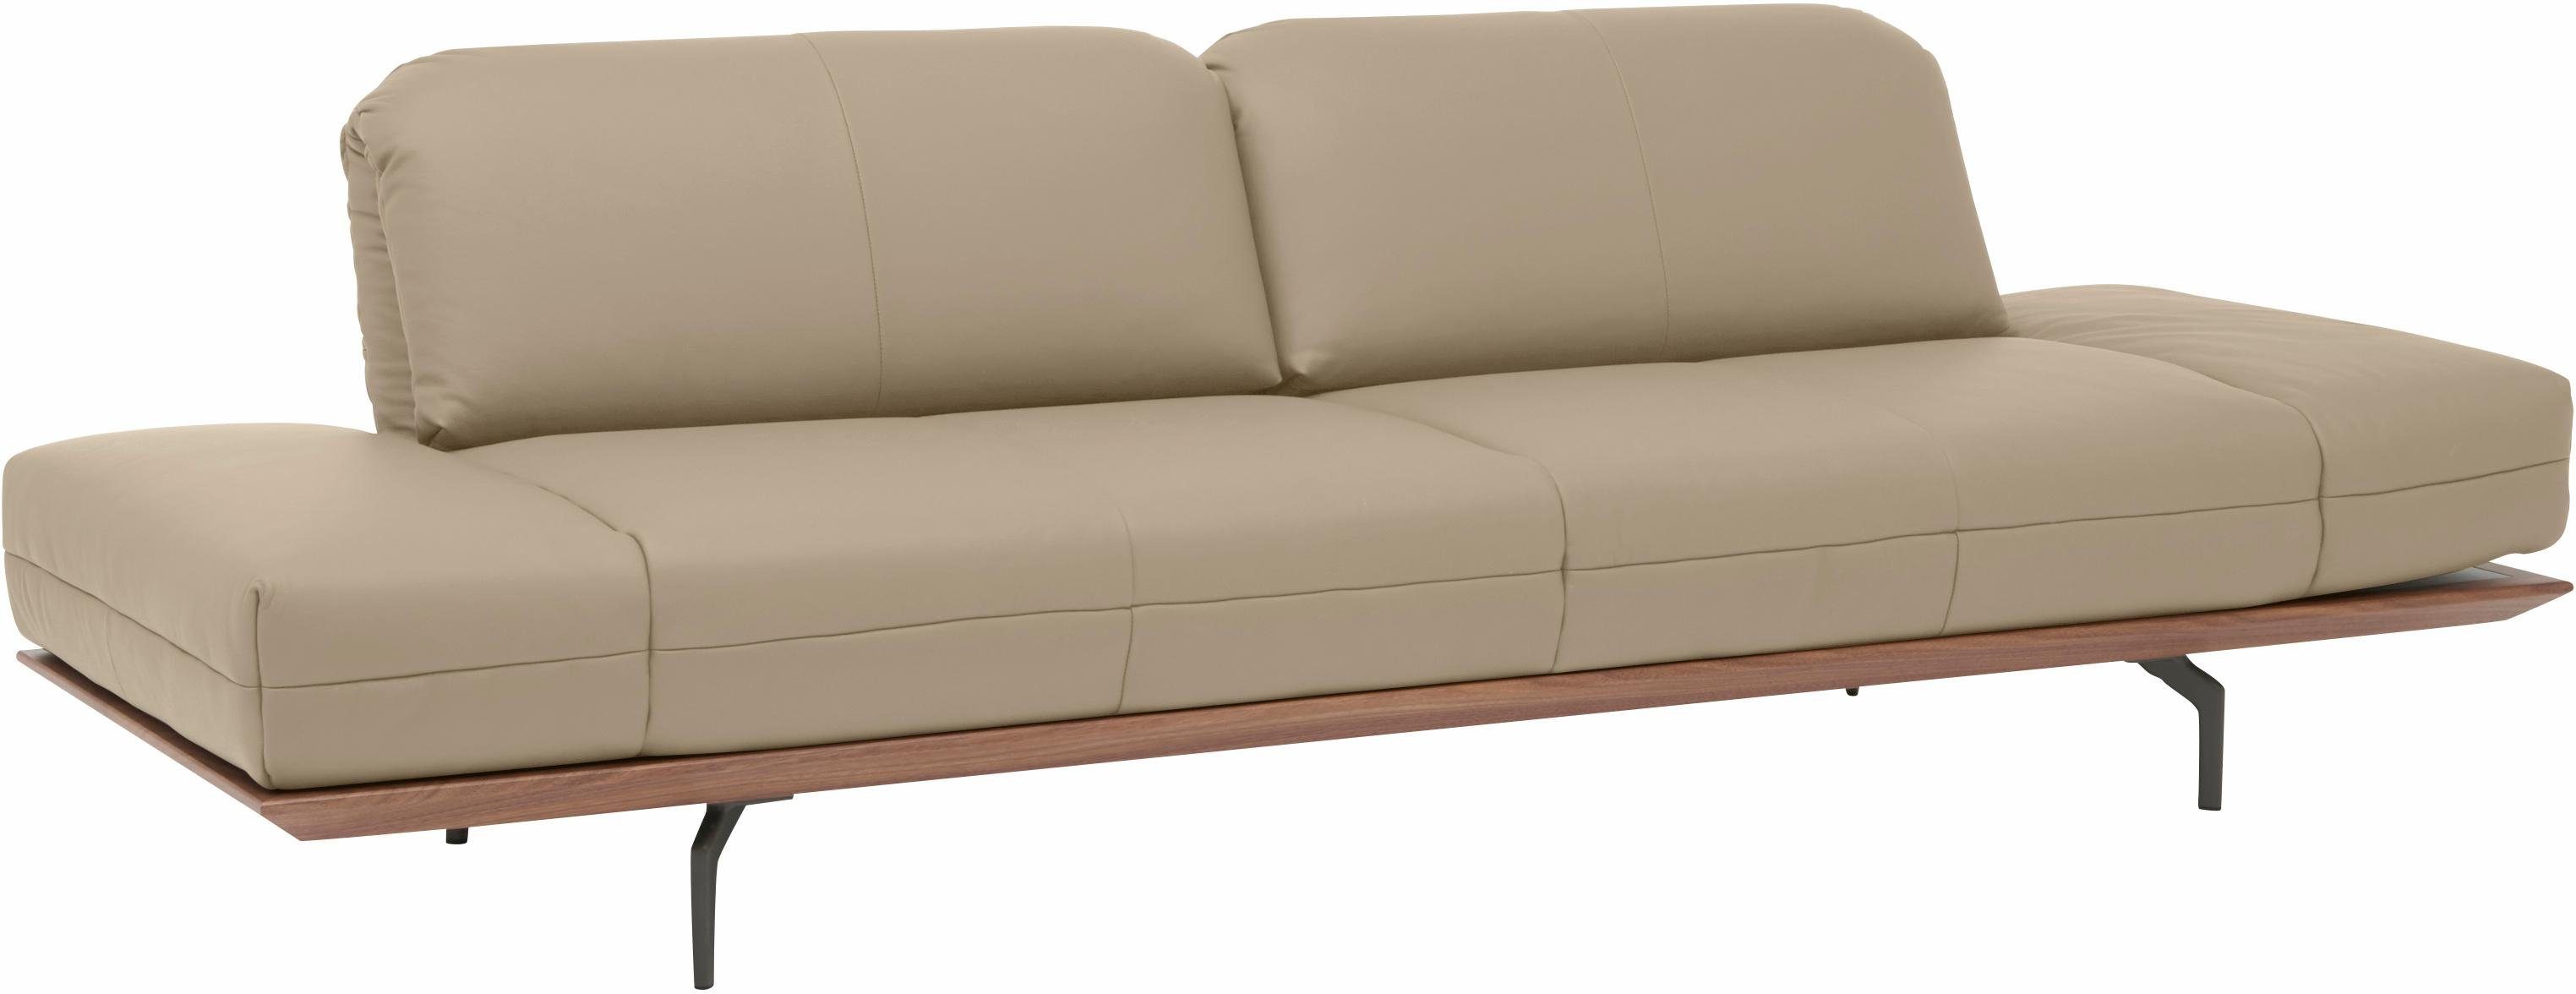 hülsta sofa 3-Sitzer oder Nußbaum, hs.420, in cm Natur 2 Breite Eiche Holzrahmen Qualitäten, 232 in